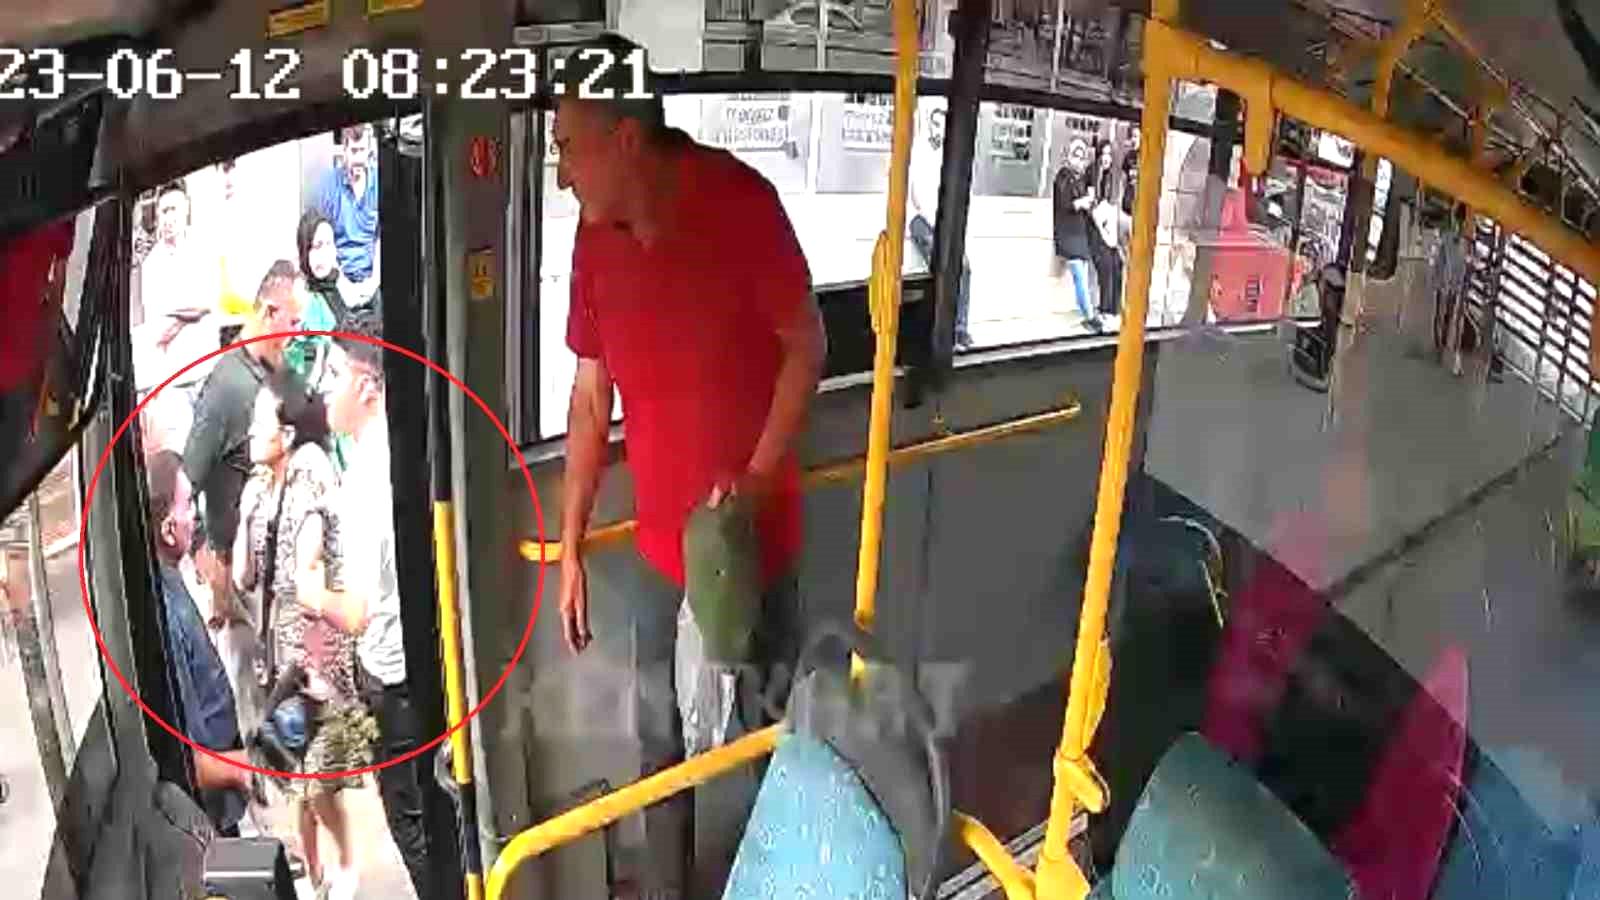 Otobüs şoförü, tartakladığı kadın yolcuyu araçtan indirdi: O anlar kamerada